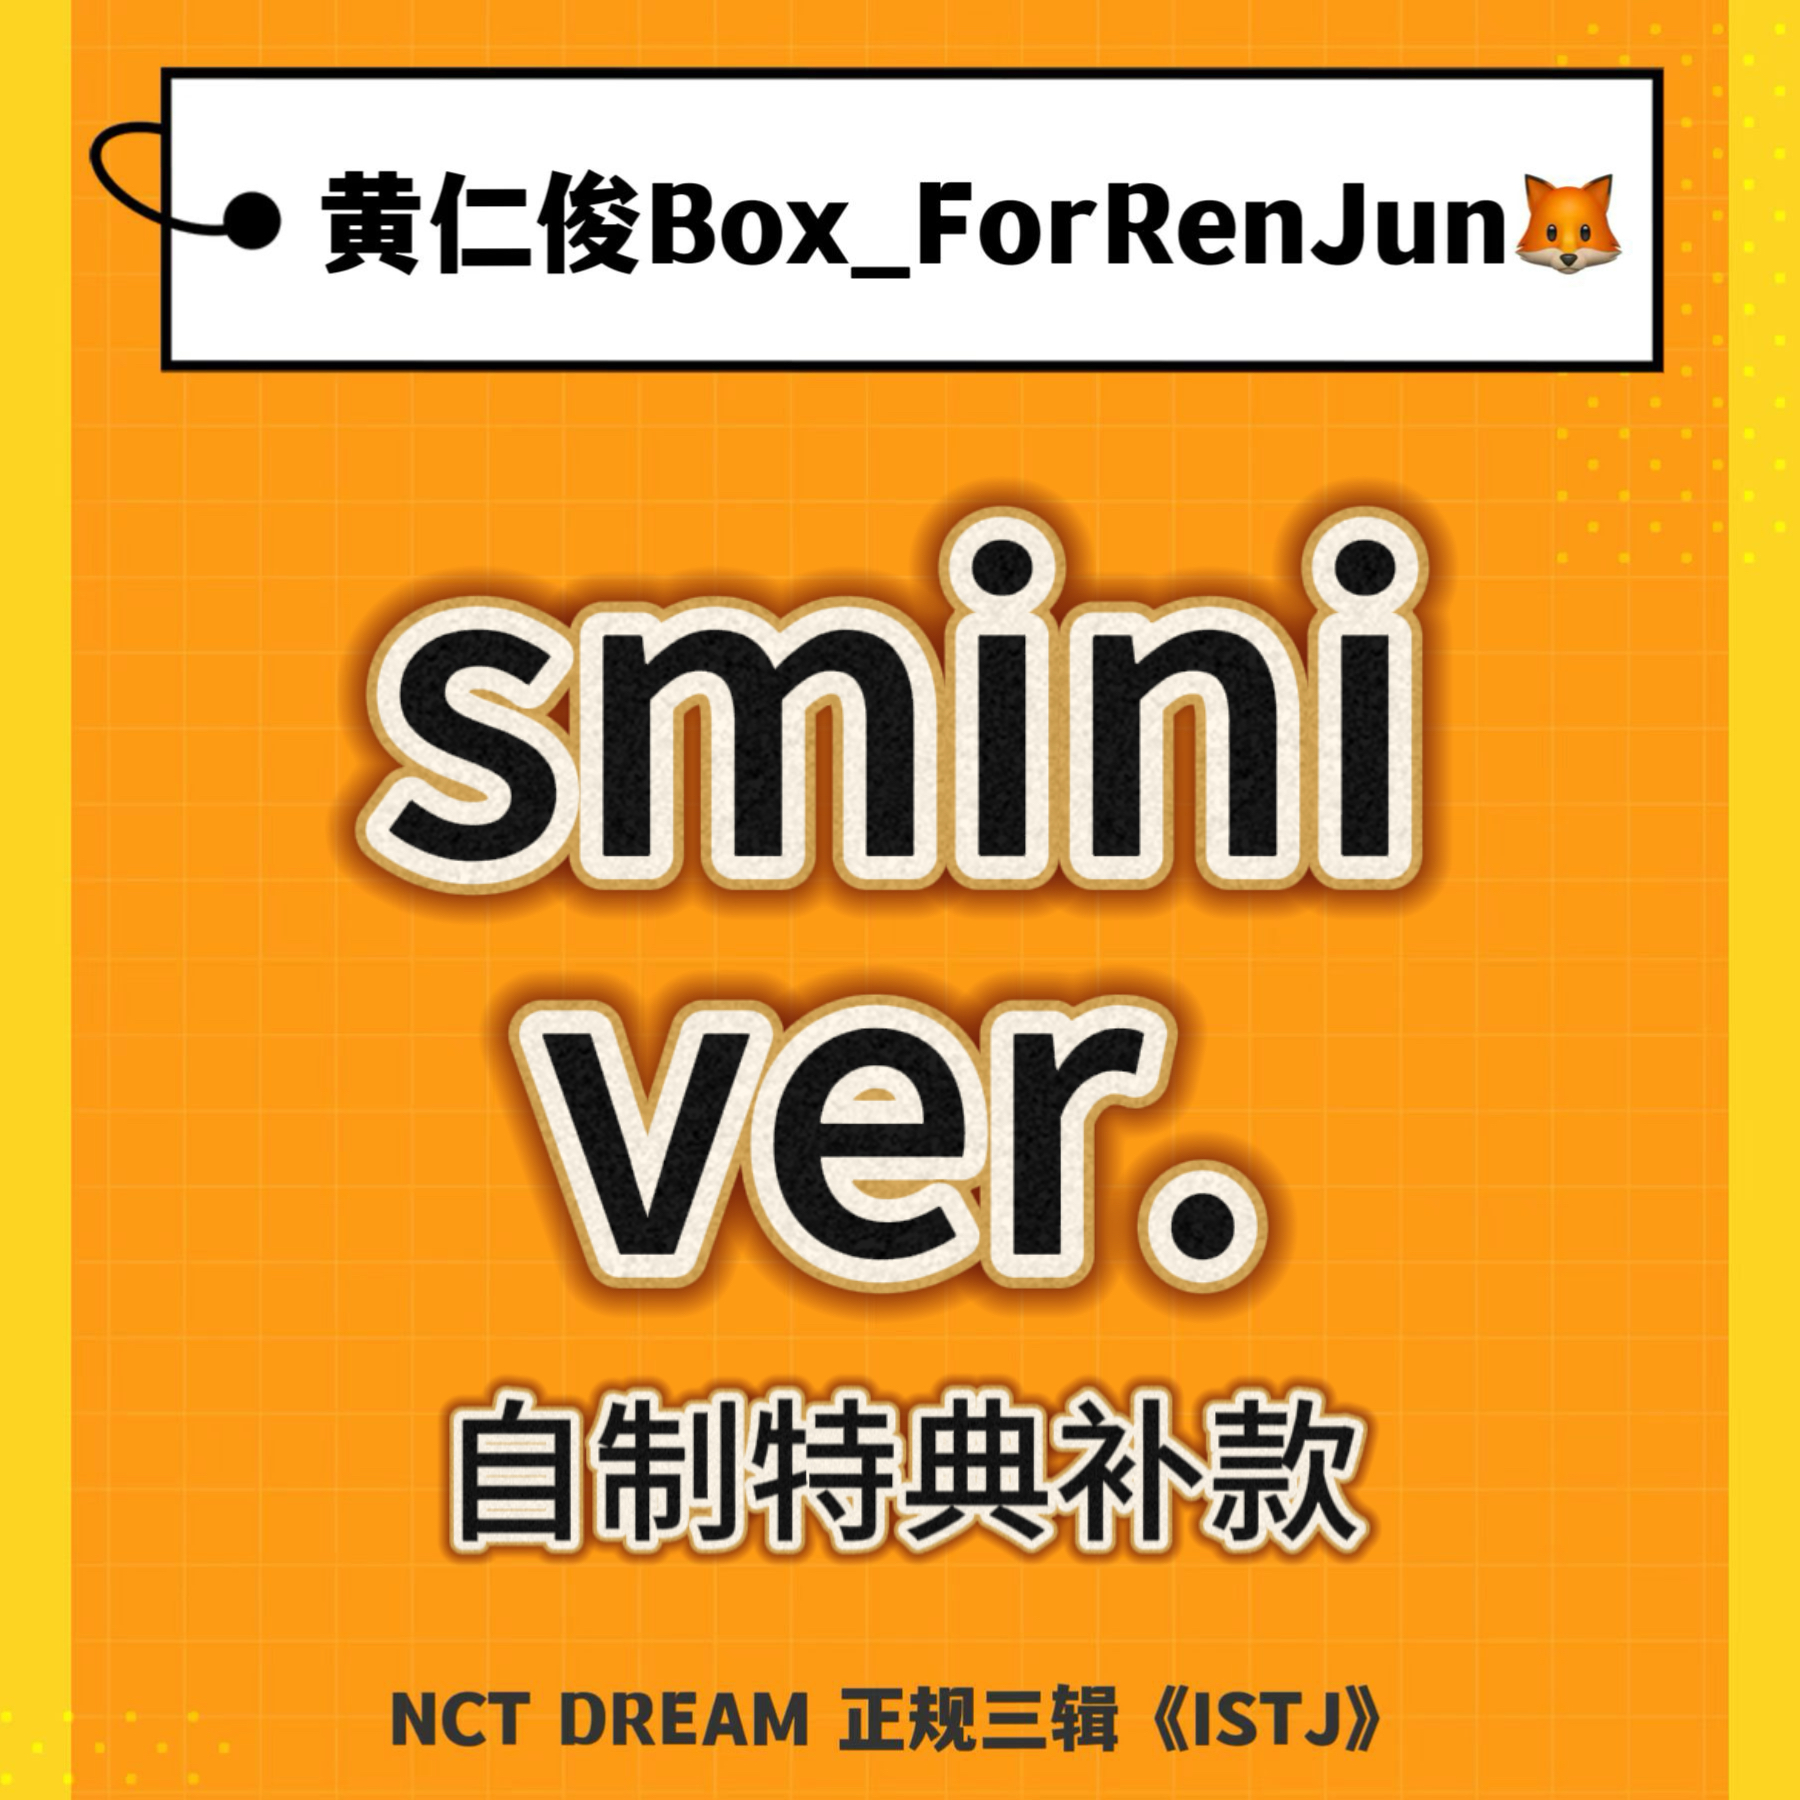 [补款 裸专] (*需备注微店手机号) NCT DREAM - 正规3辑 [ISTJ] (SMini Ver.) (Smart Album) (随机版本)_黄仁俊吧RenJunBar